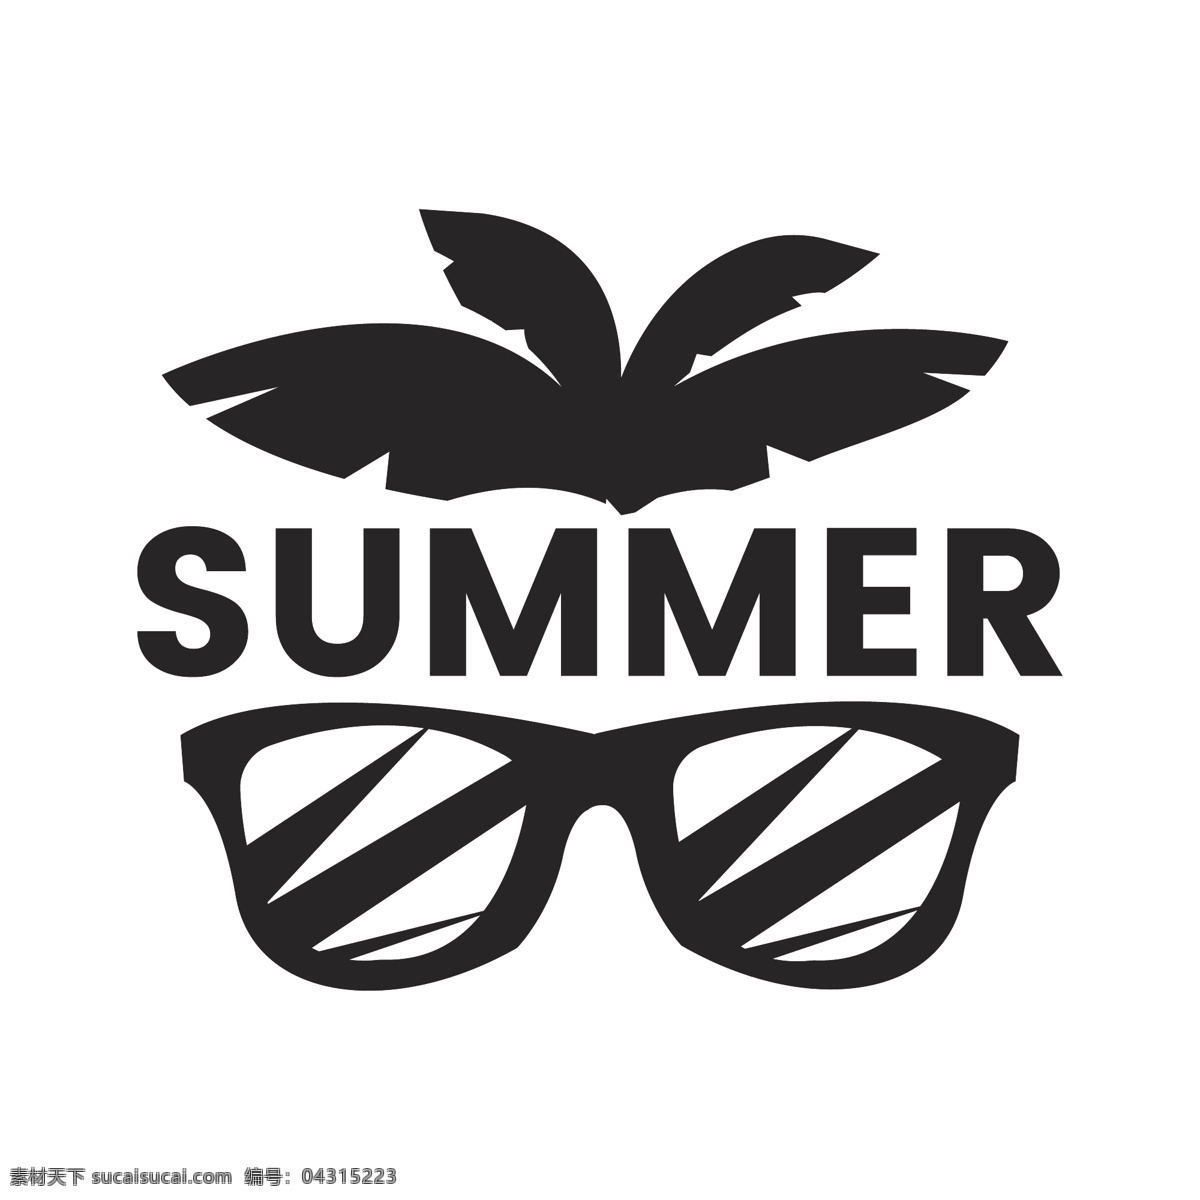 夏天 假日 印刷 logo 模板 summer 夏日 度假 logo模板